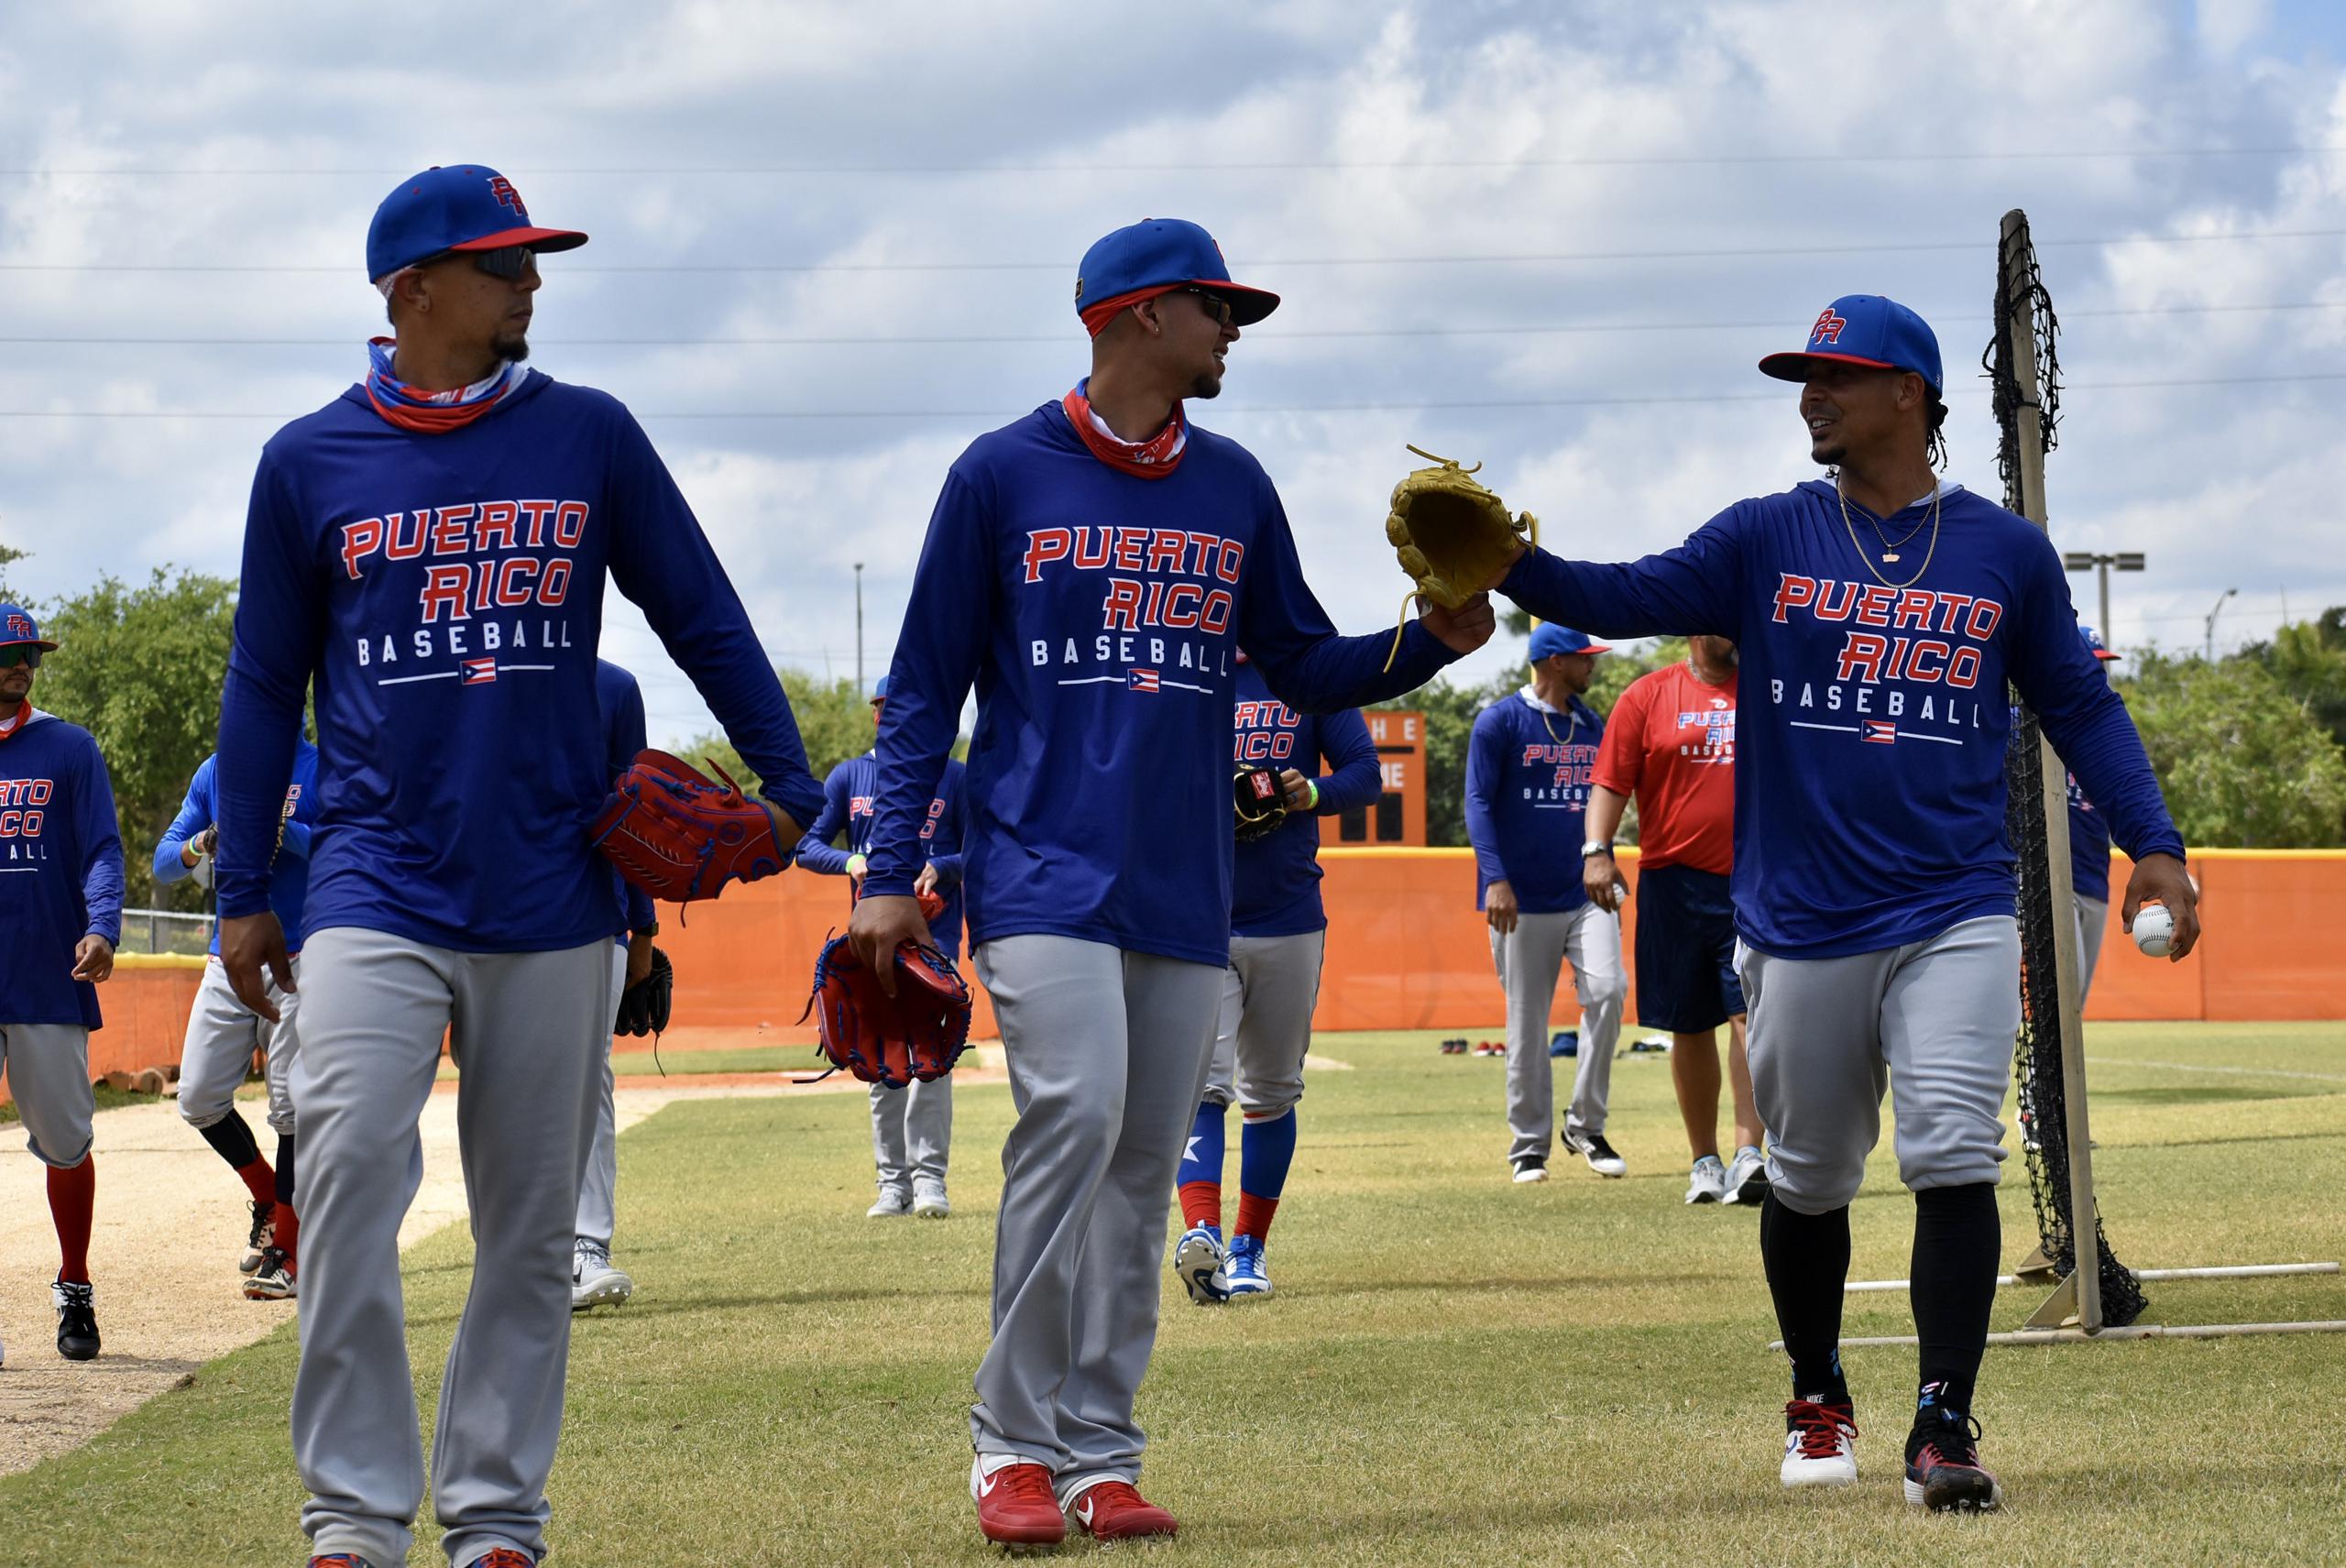 La novena puertorriqueña completó una práctica en el Lawnwood Baseball Complex.